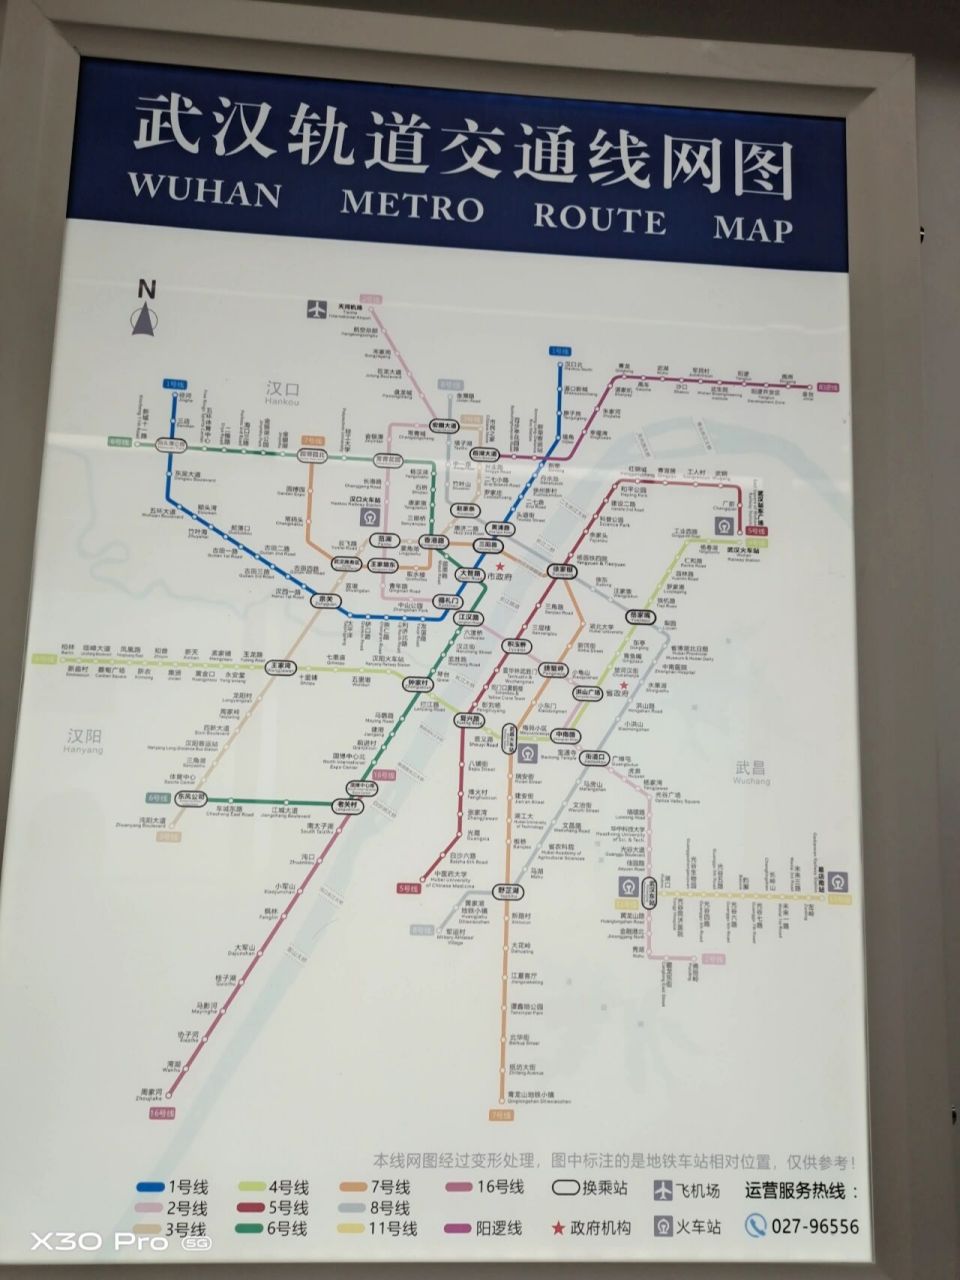 武汉地铁线路图集合     没有武汉地铁线路的话题呢? 啥情况?